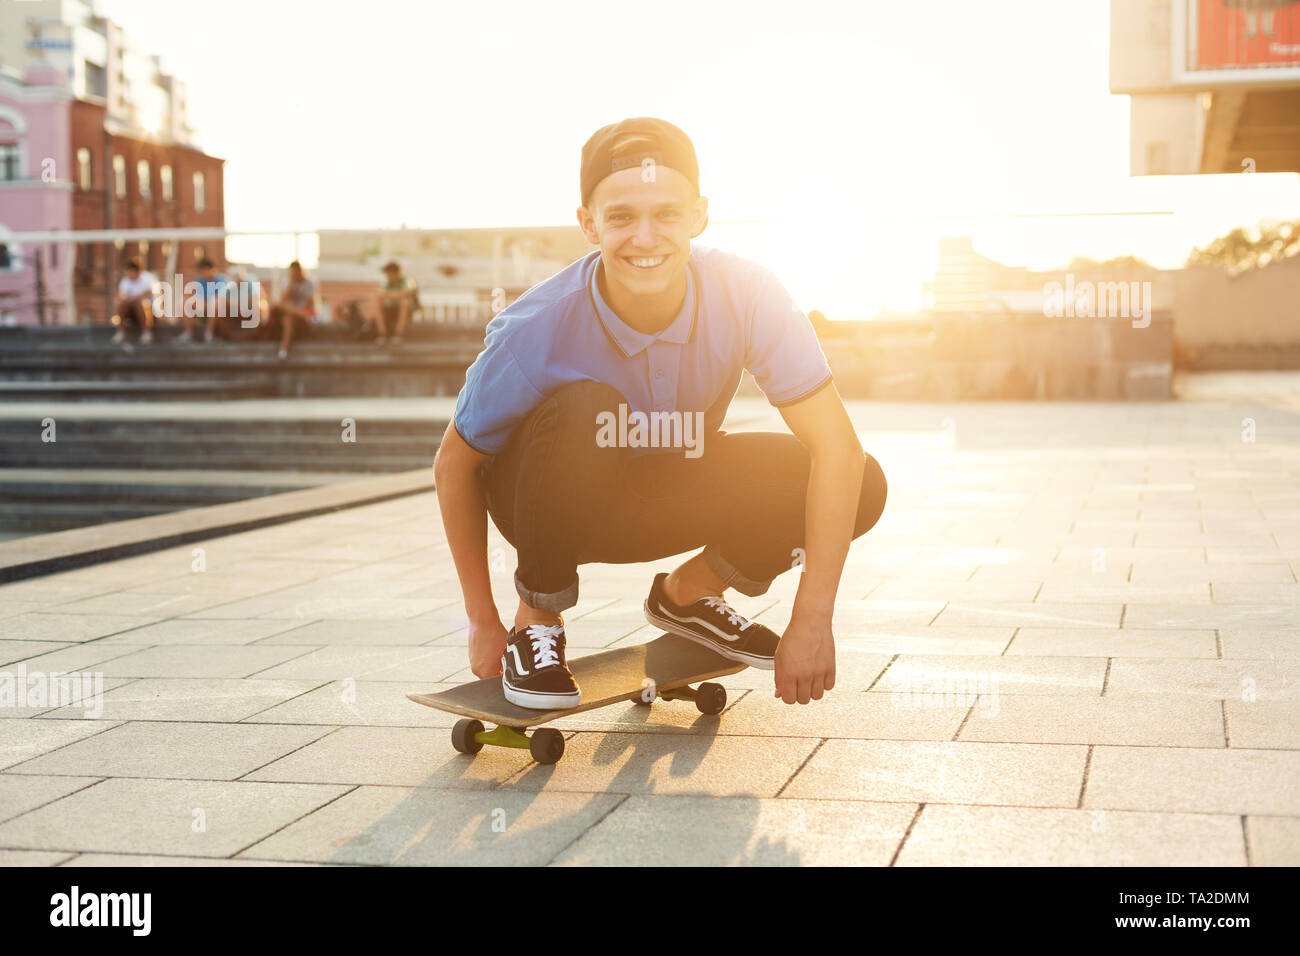 Skater Boy Riding sur planche de skate park Outdoor Banque D'Images